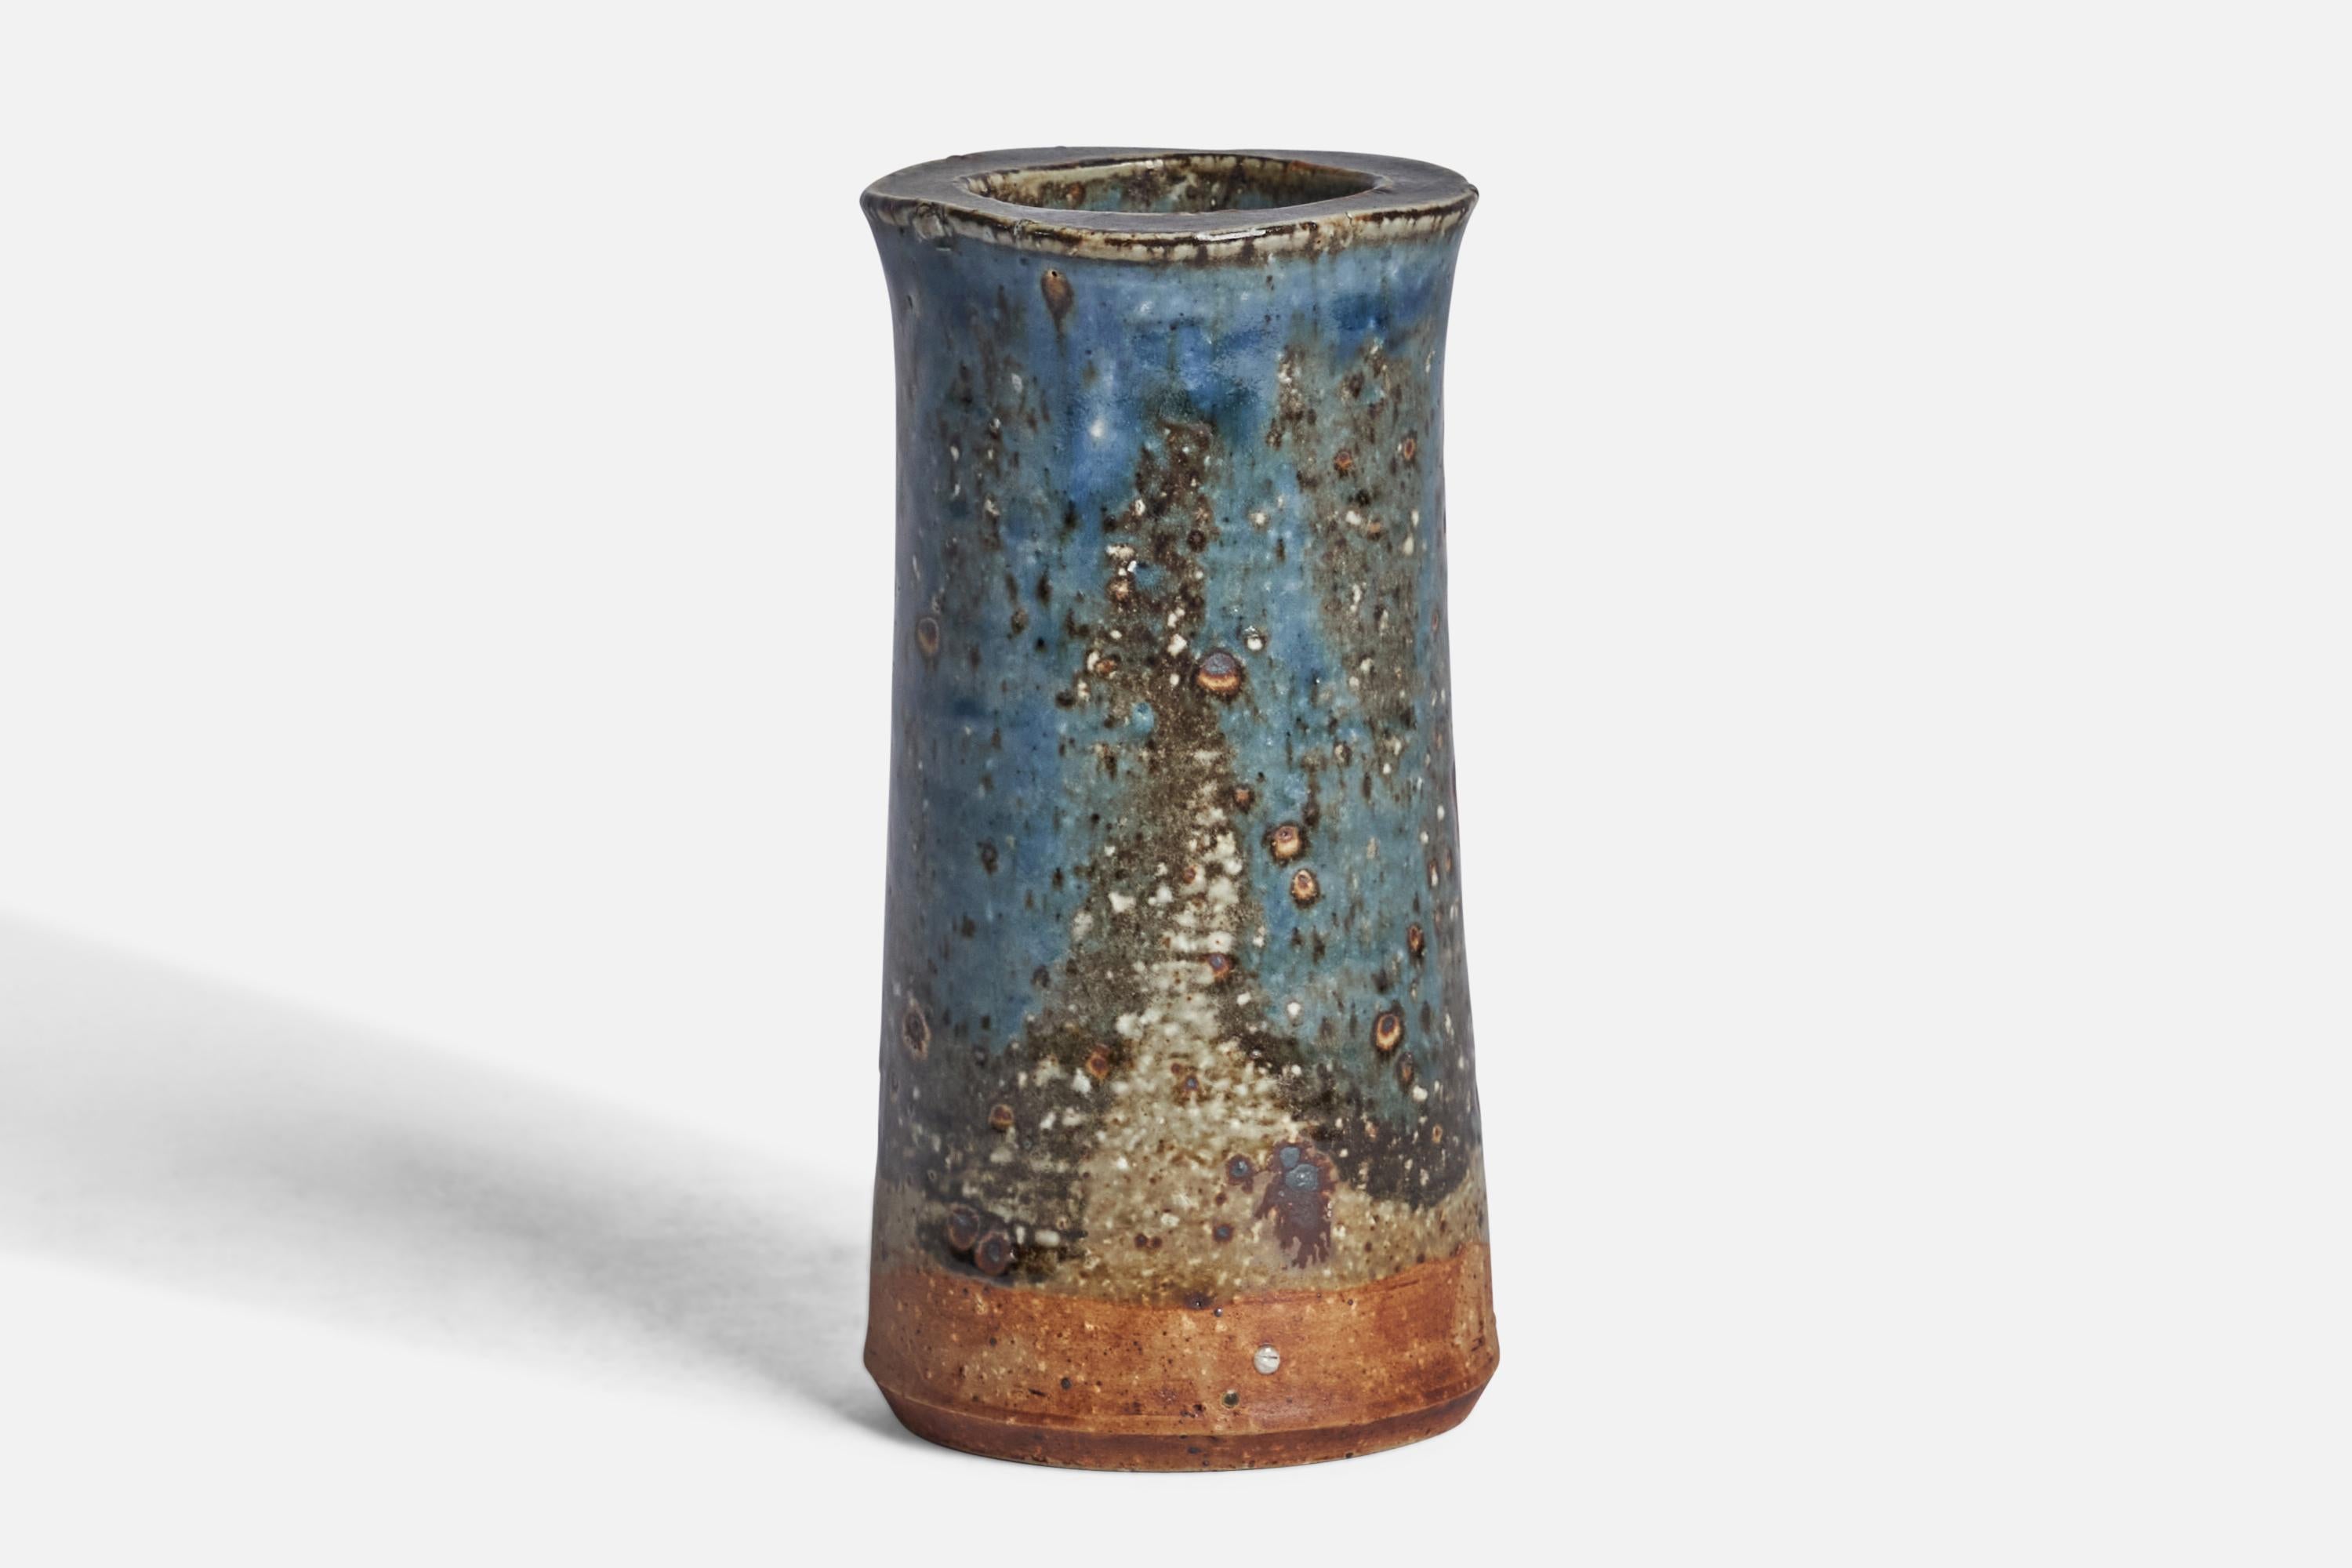 Vase aus blauem, grauem und braun glasiertem Steinzeug, entworfen von Marianne Westman und hergestellt von Rörstrand, Schweden, um 1950.